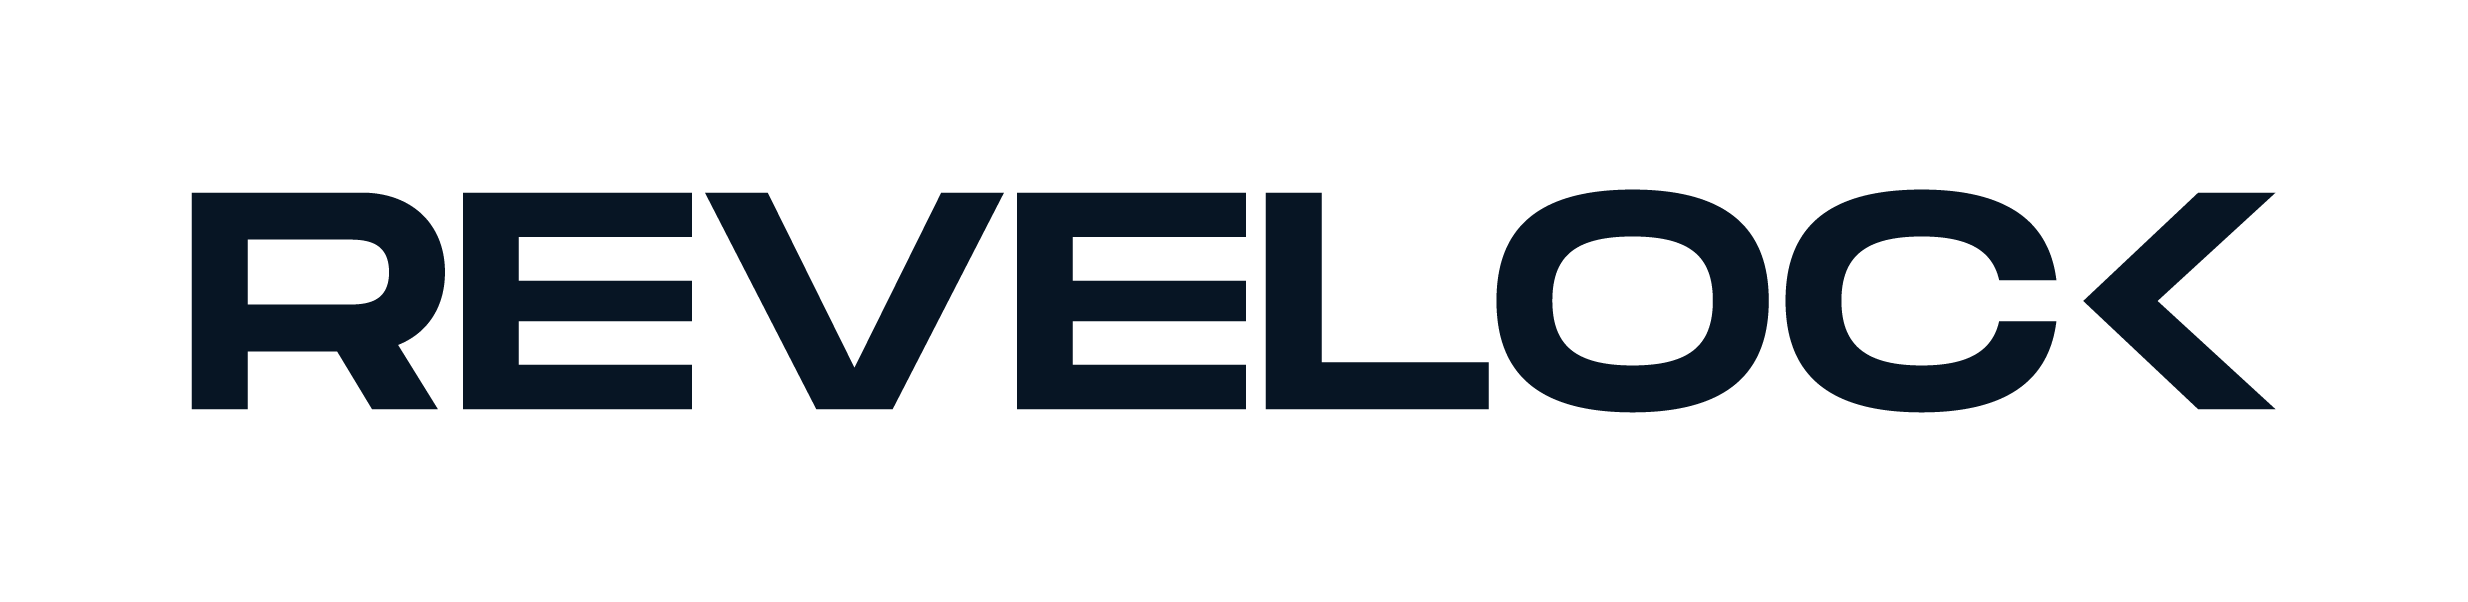 Revelock y Veritran han anunciado una alianza con la la finalidad de reducir las pérdidas provocadas por el fraude bancario online